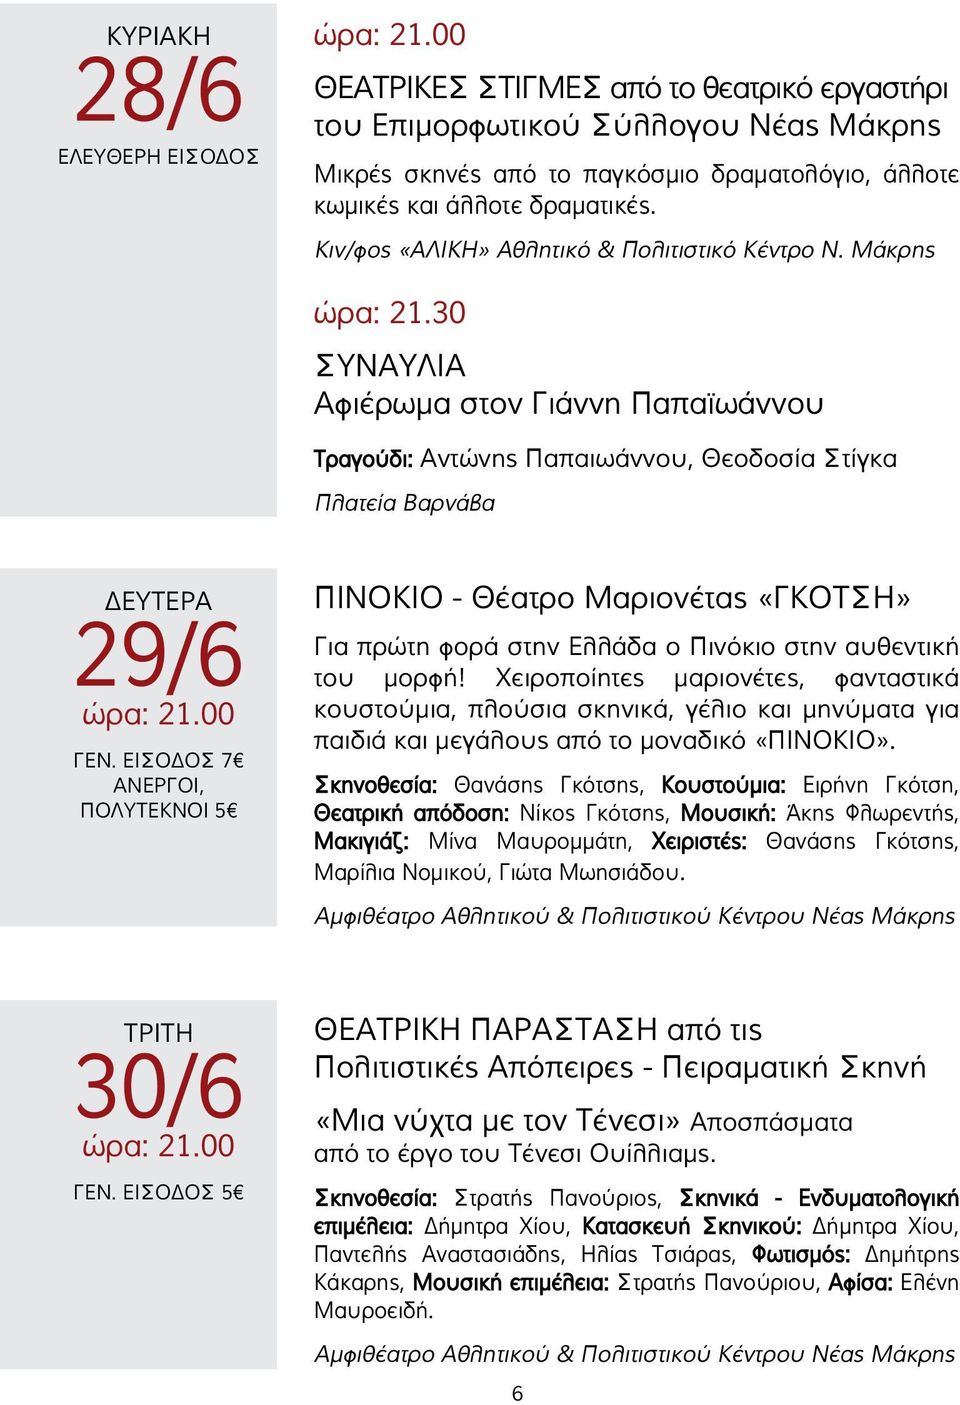 ΕΙΣΟΔΟΣ 7 ΑΝΕΡΓΟΙ, ΠΟΛΥΤΕΚΝΟΙ 5 ΠΙΝΟΚΙΟ - Θέατρο Μαριονέτας «ΓΚΟΤΣΗ» Για πρώτη φορά στην Ελλάδα ο Πινόκιο στην αυθεντική του μορφή!